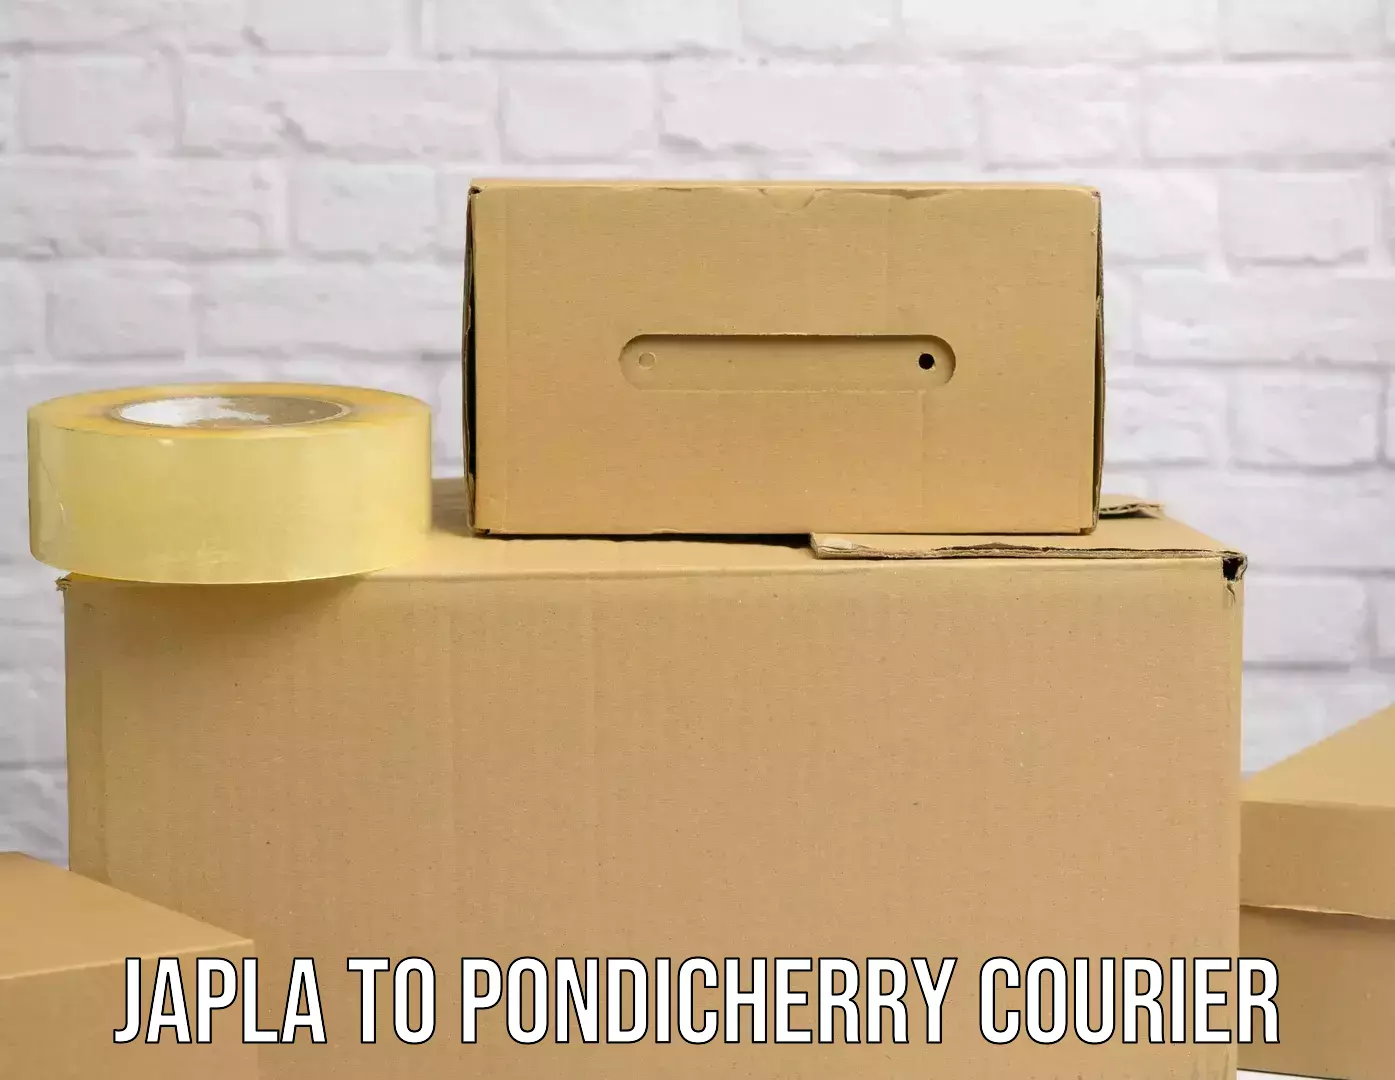 Efficient parcel service Japla to Pondicherry